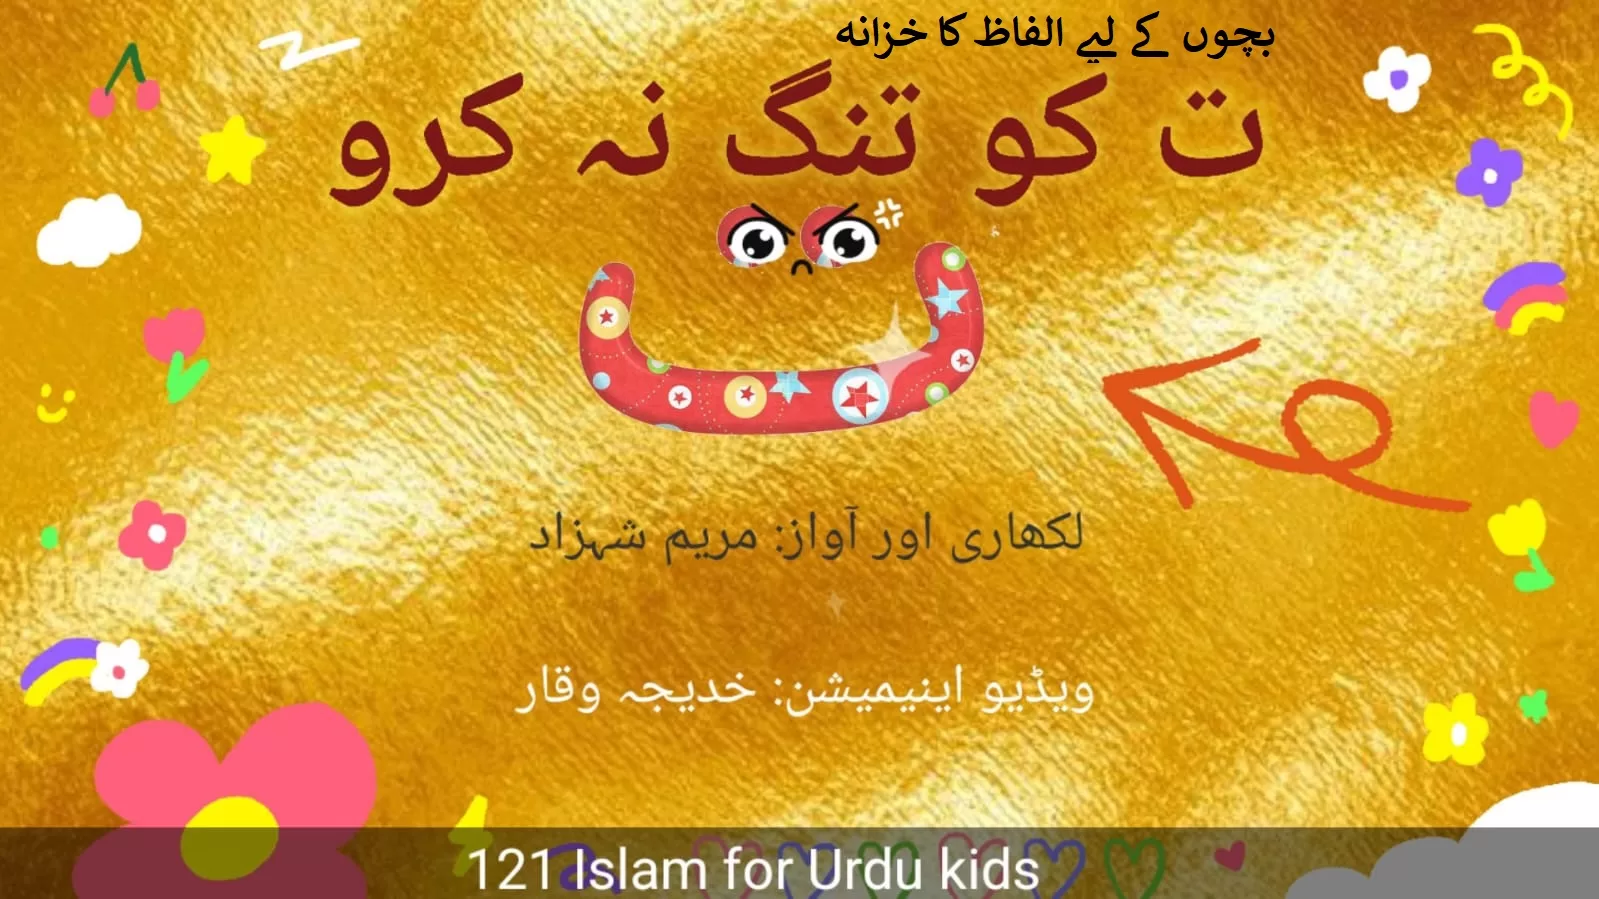 Free Urdu stories for kids